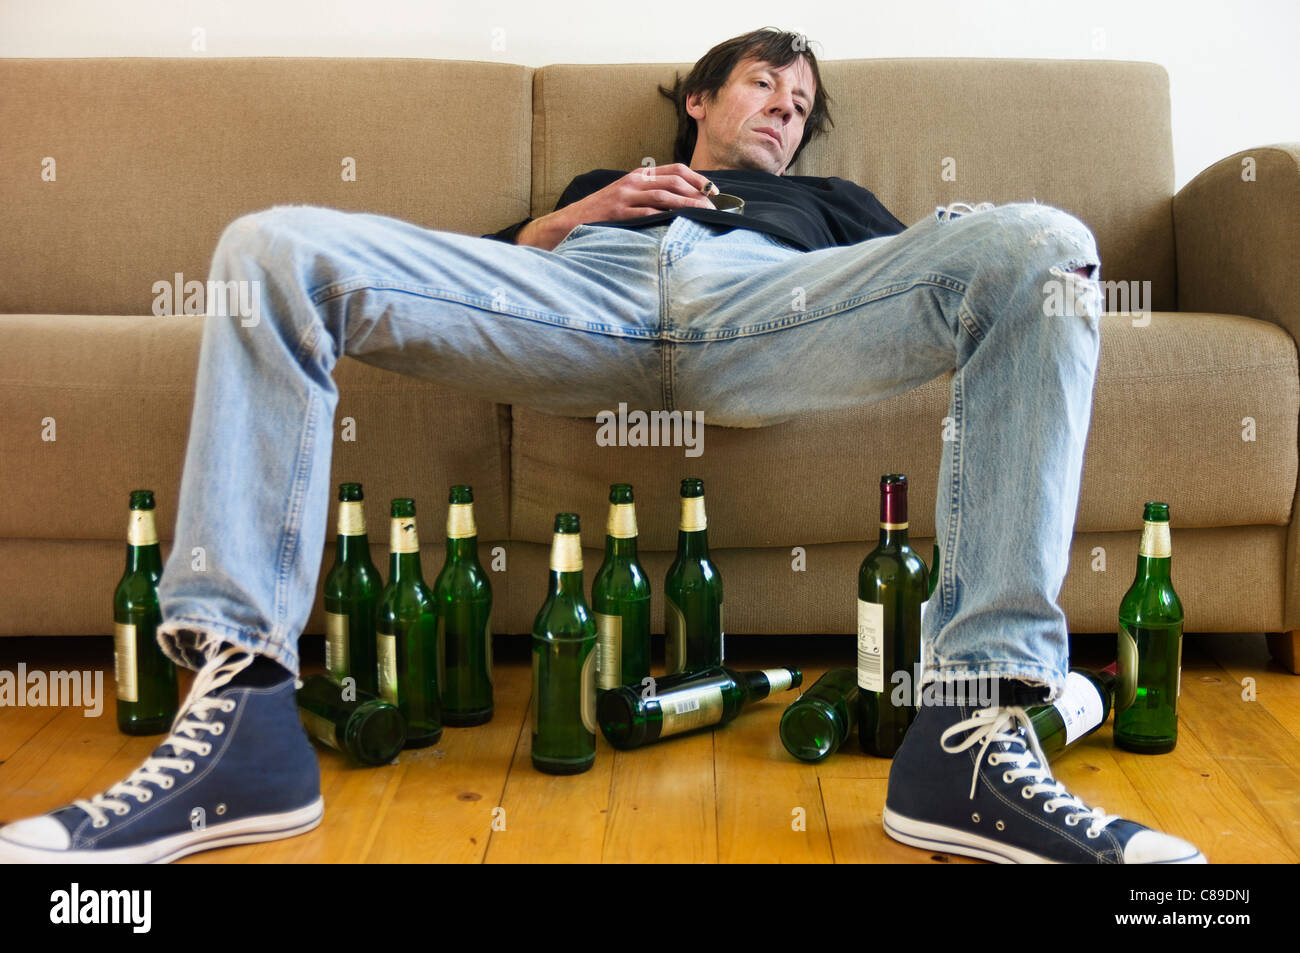 Allemagne, Hesse, Francfort, Drunk man avec des bouteilles de bière vides Banque D'Images